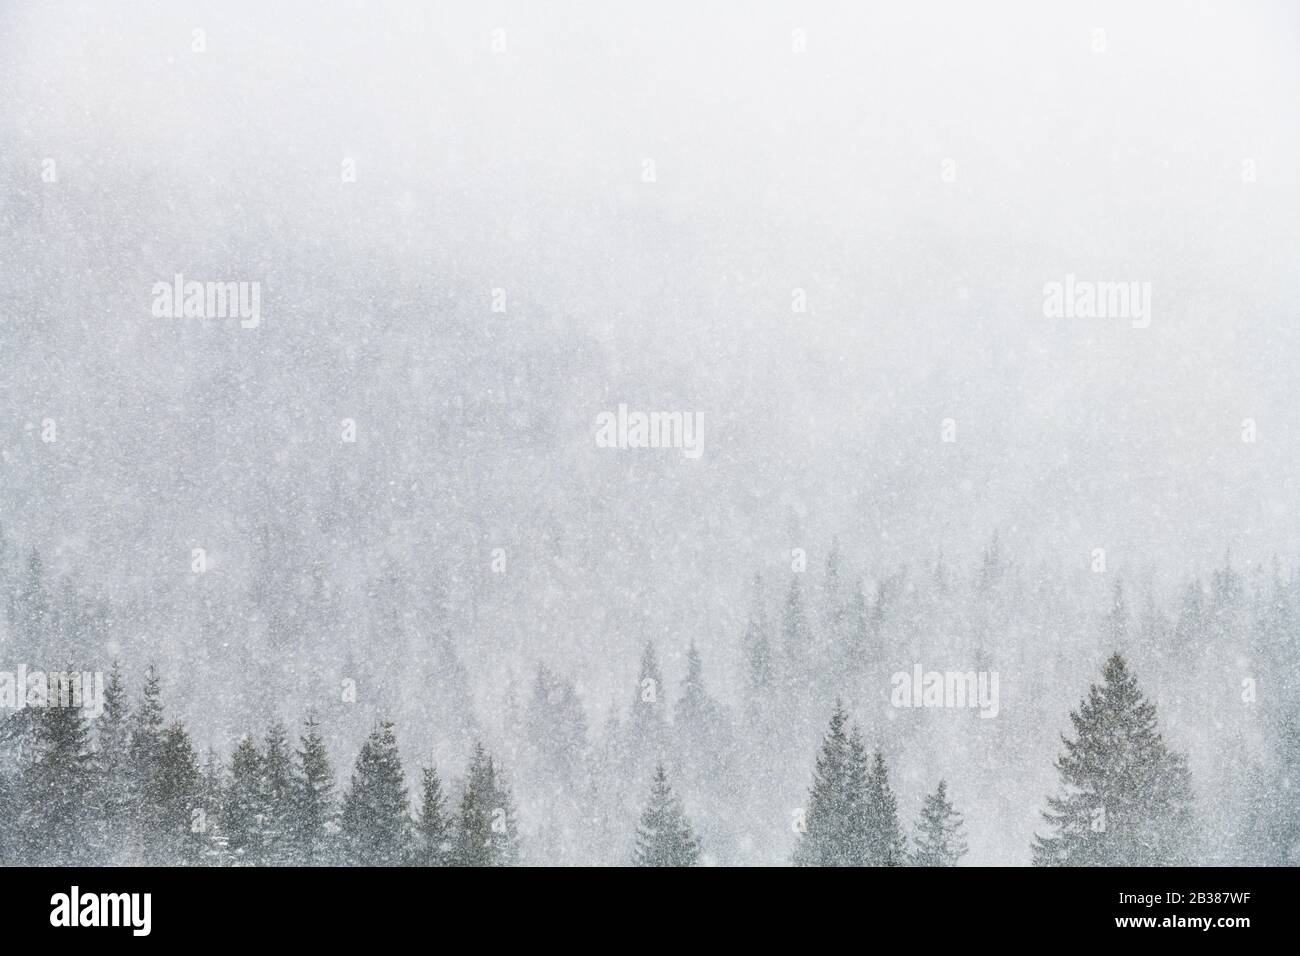 Schneesturm in den Winterbergen. Verschneite Fichten- und Kiefernwälder. Landschaftsfotografie Stockfoto